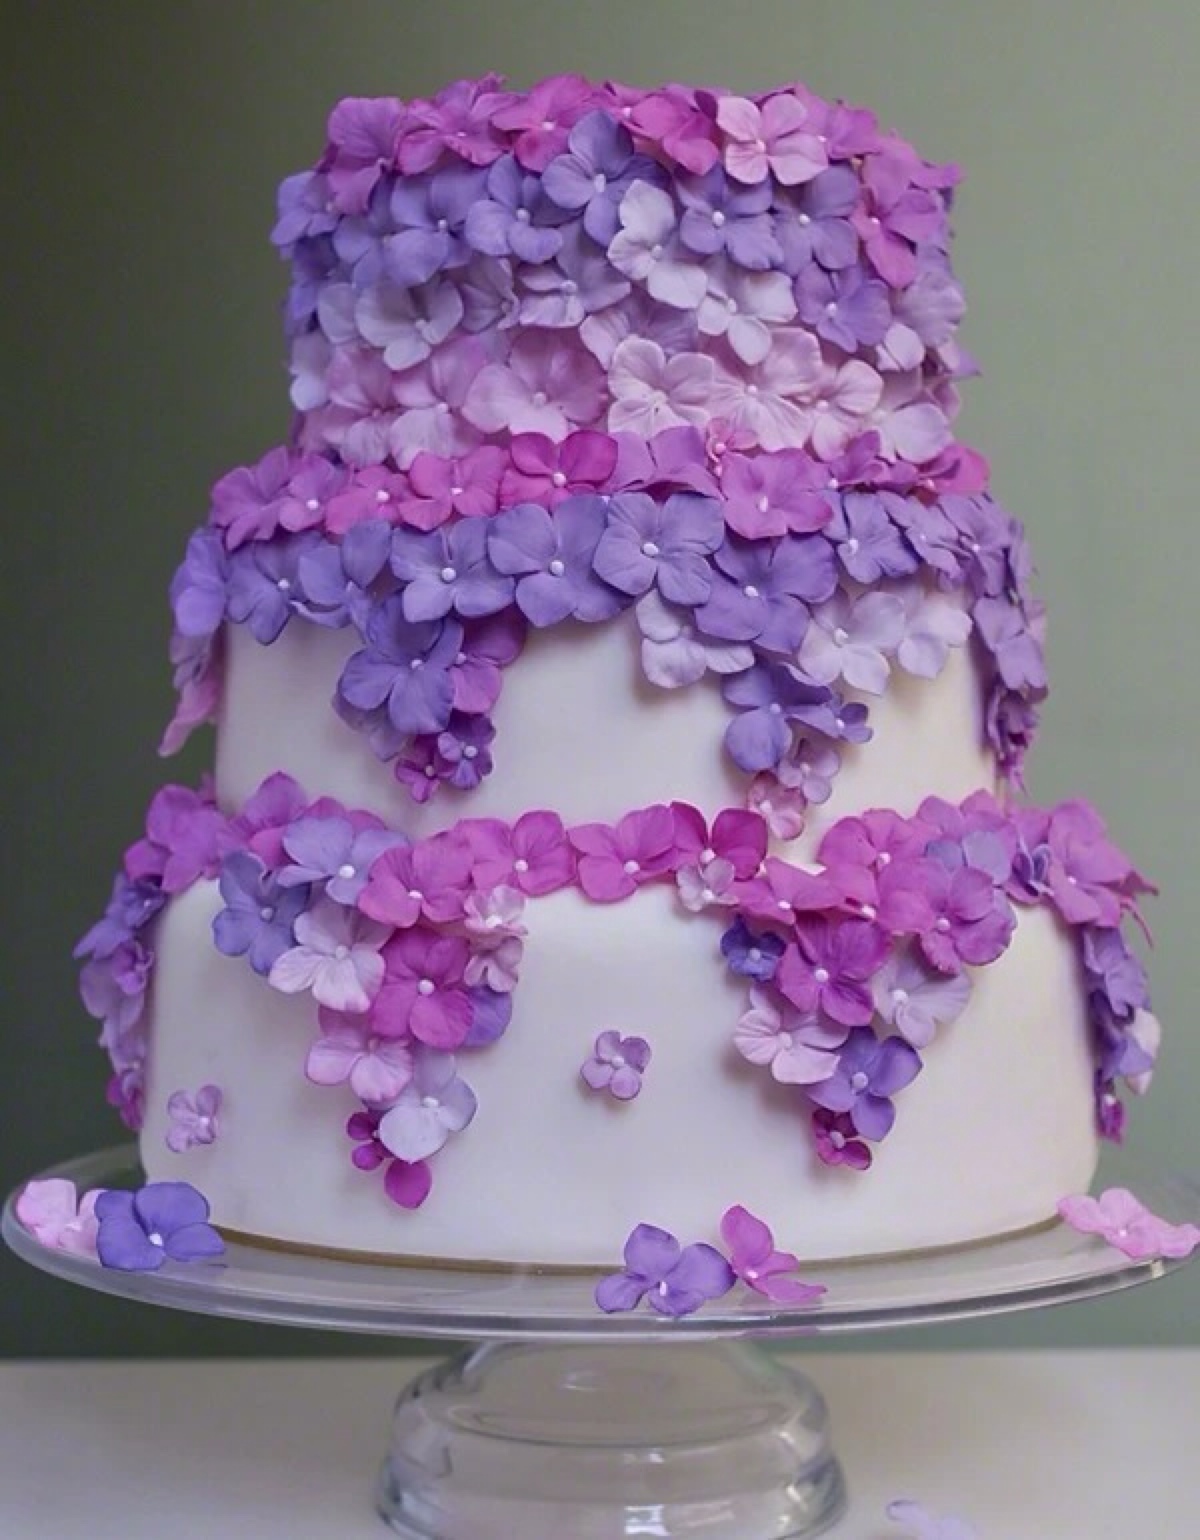 翻糖 婚礼 鲜花 紫色系 蛋糕 甜点